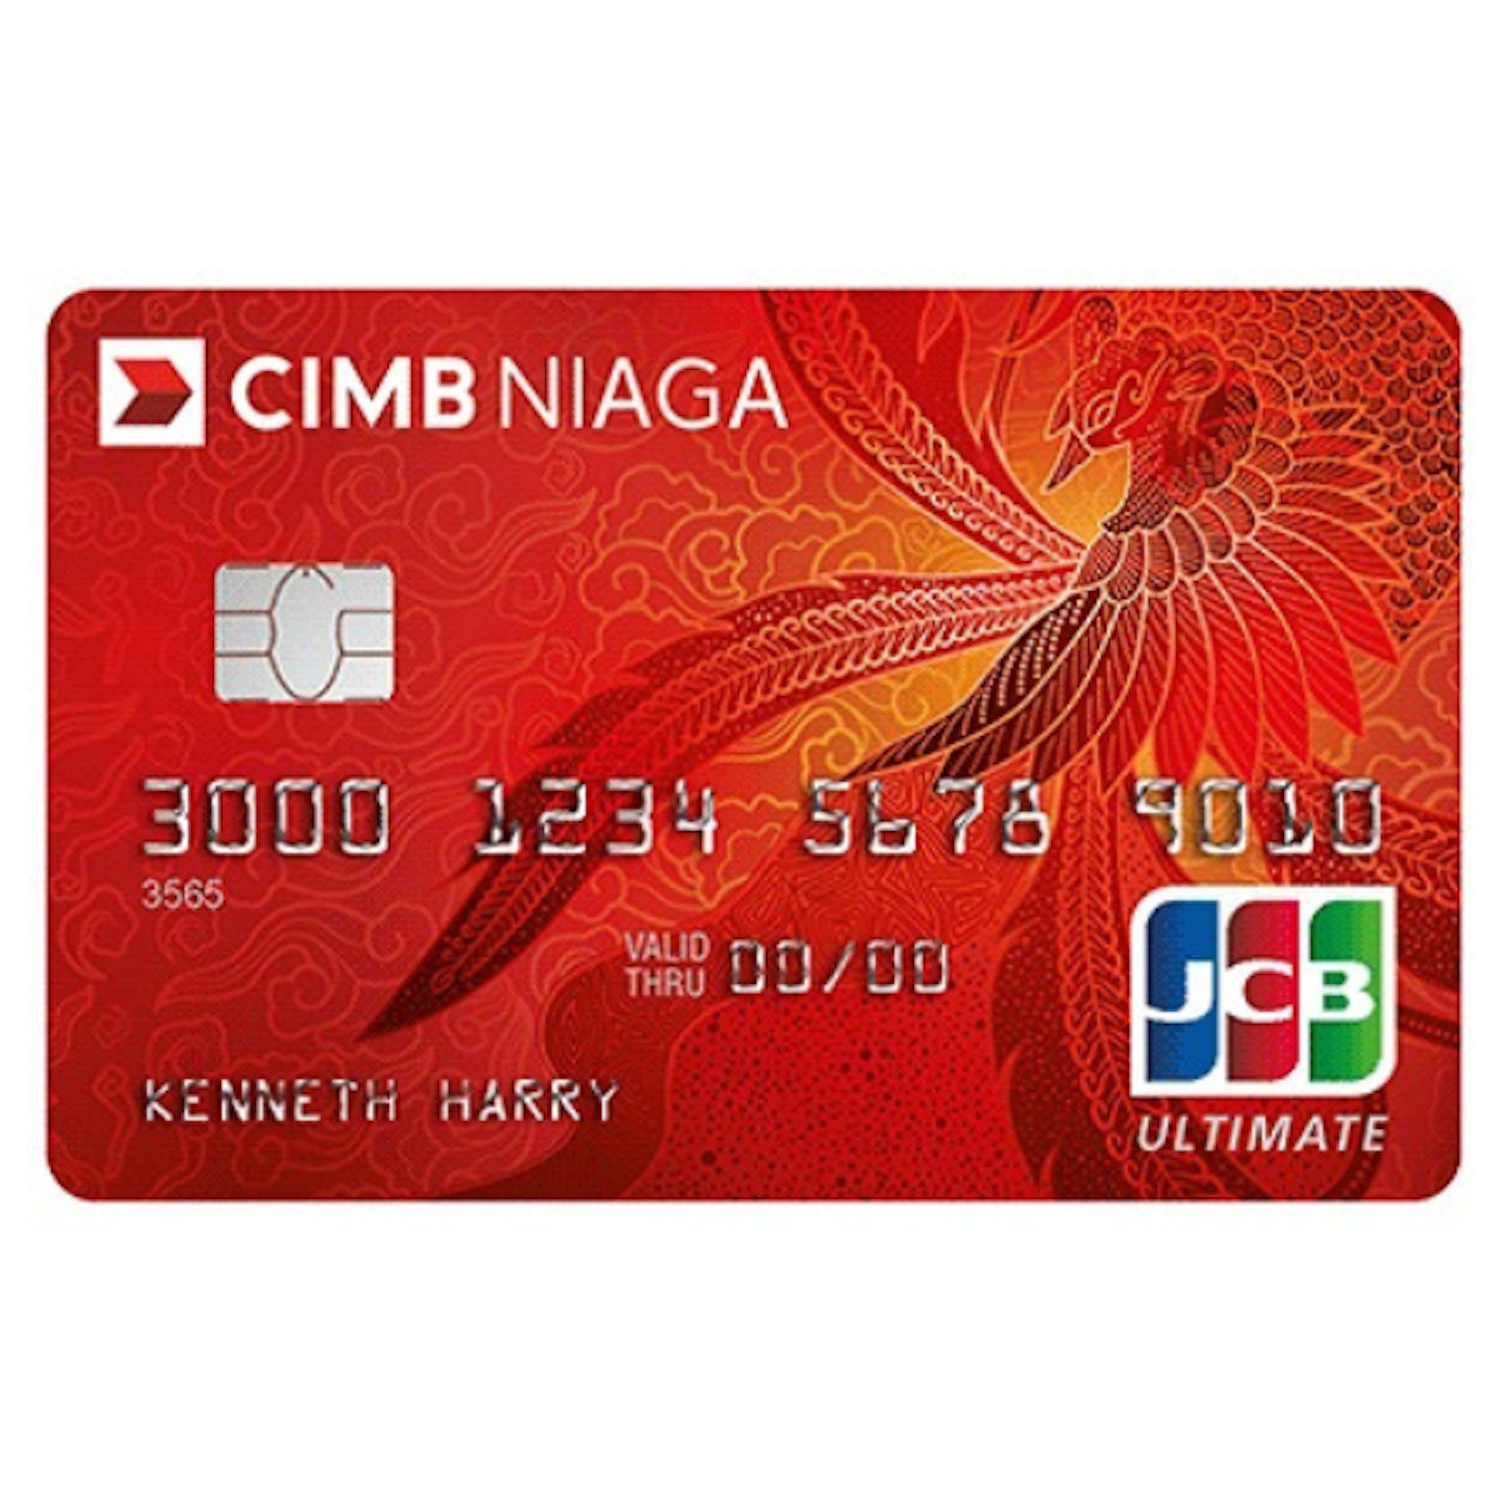 Daftar Kartu Kredit CIMB Niaga Terbaik